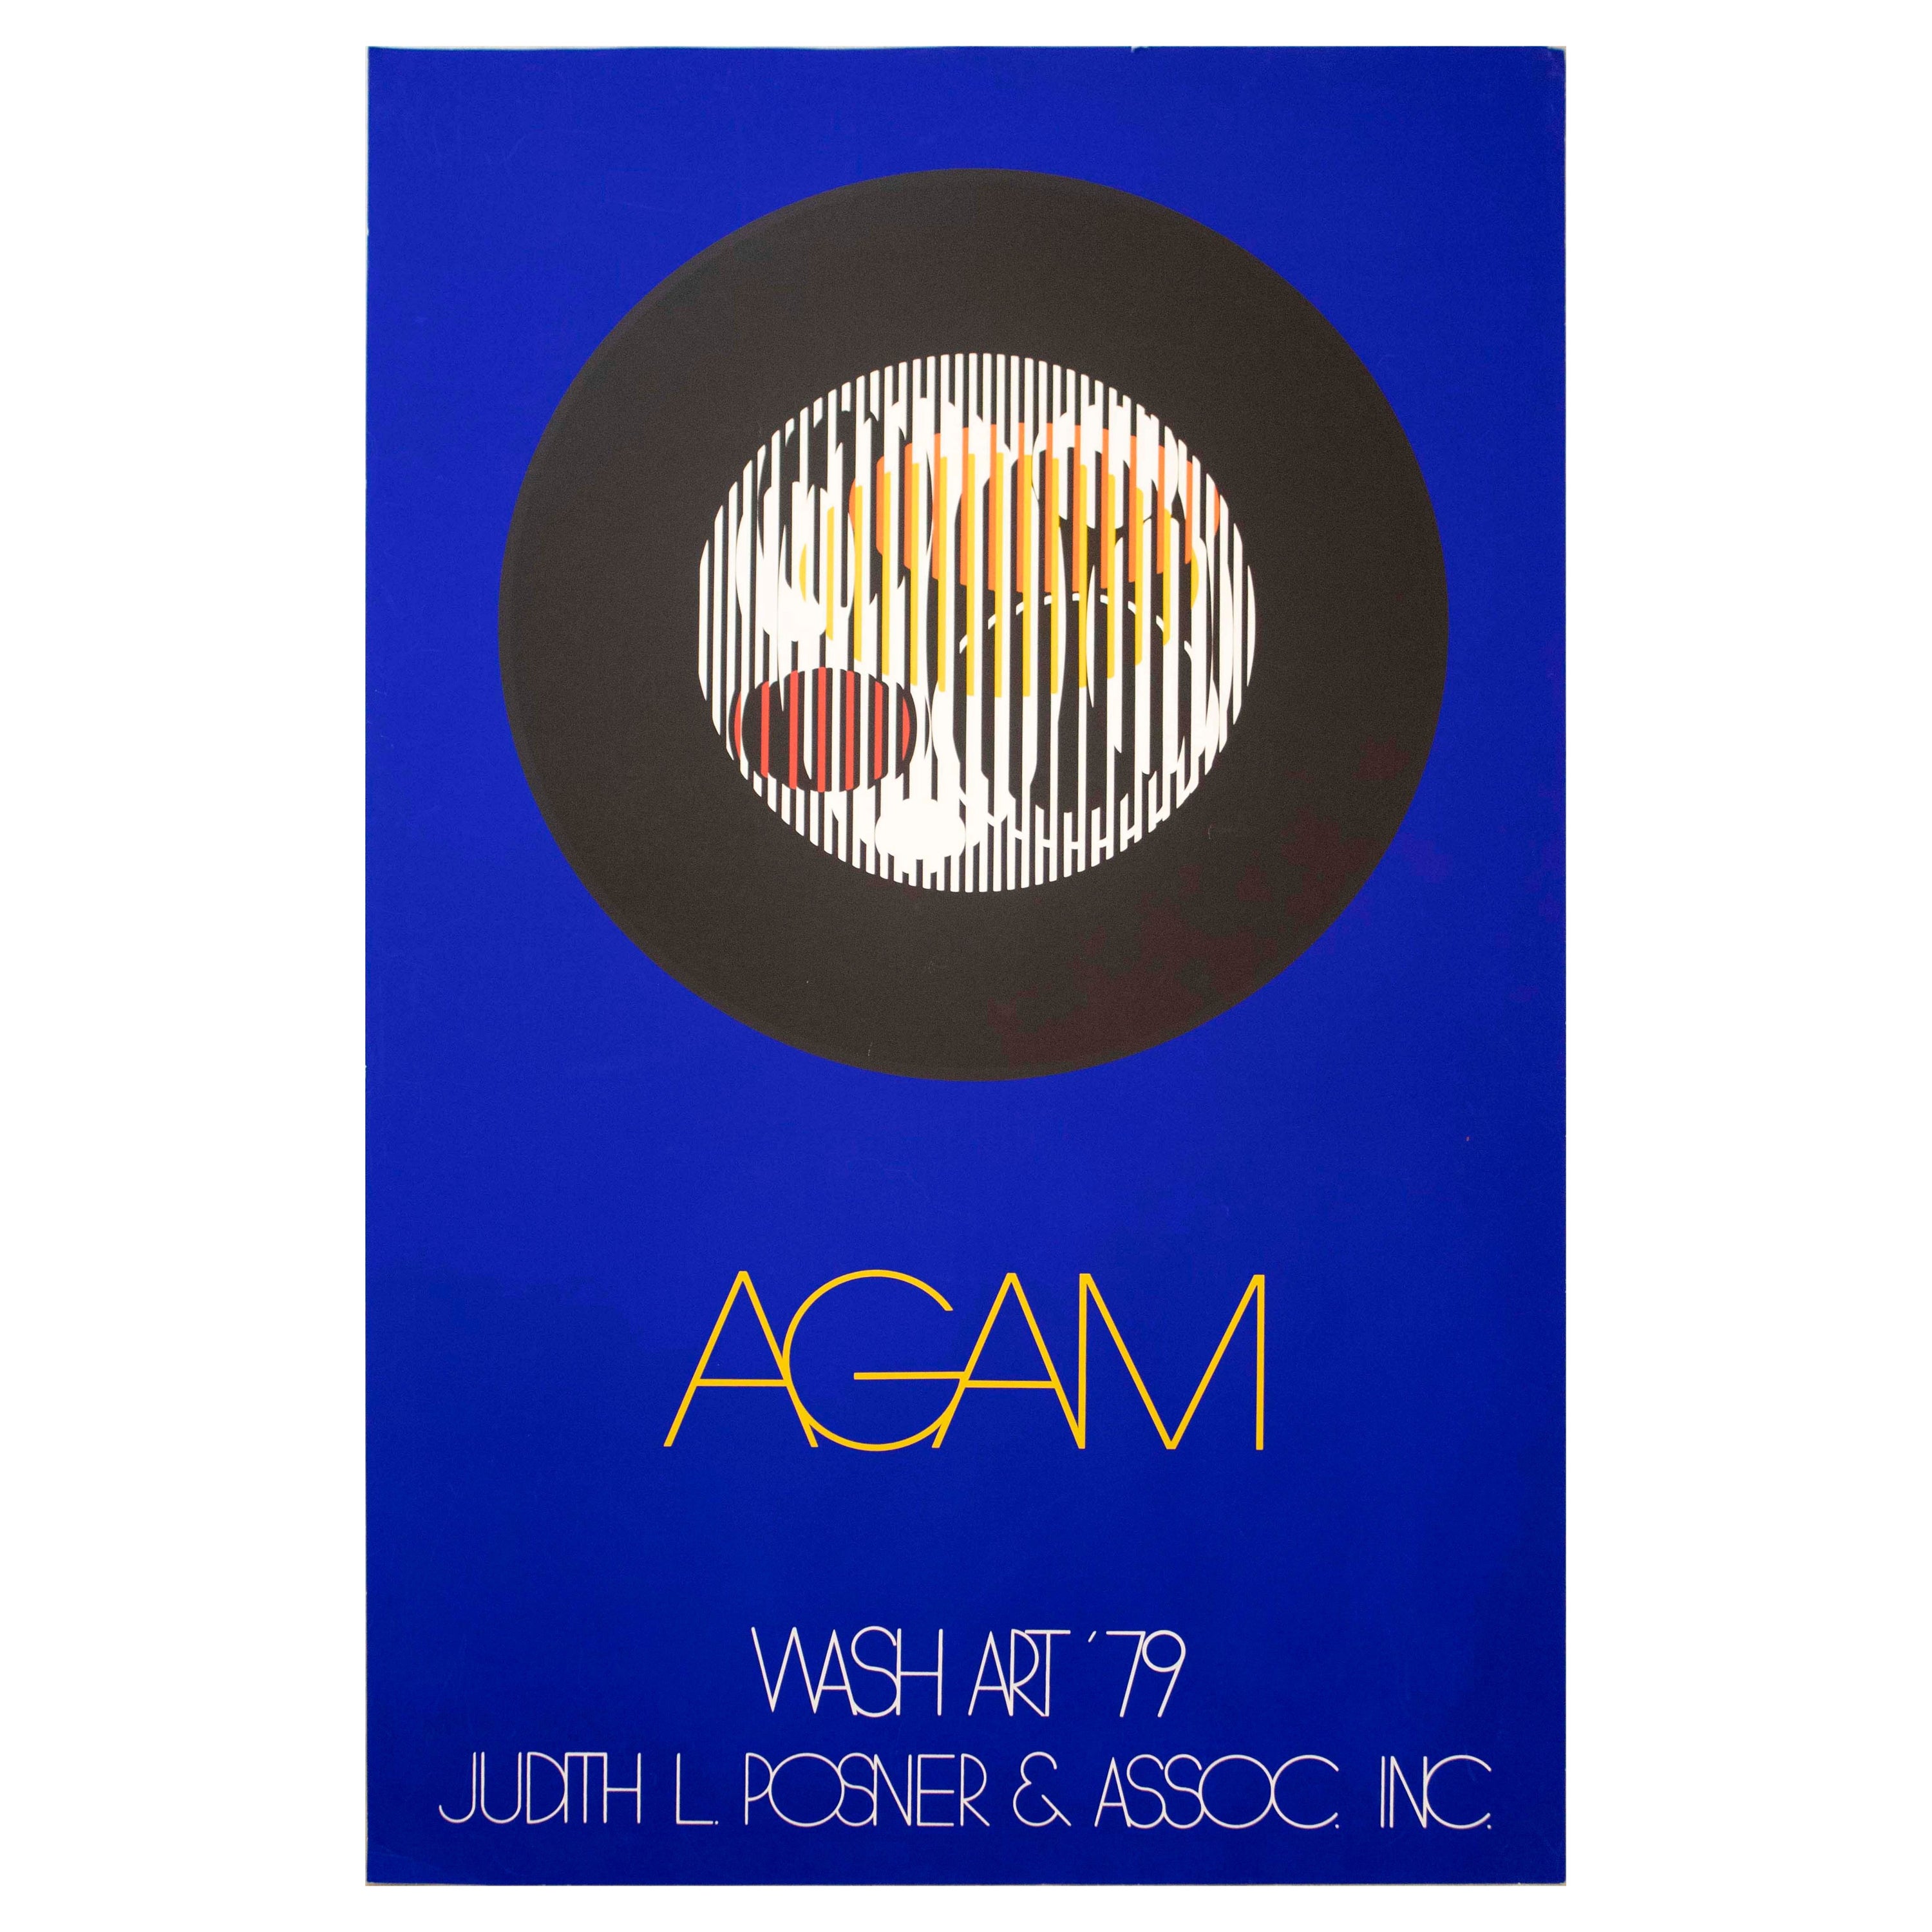 Yaacov Agam Wash Art 79 Judith L Posner & Assoc Inc For Sale